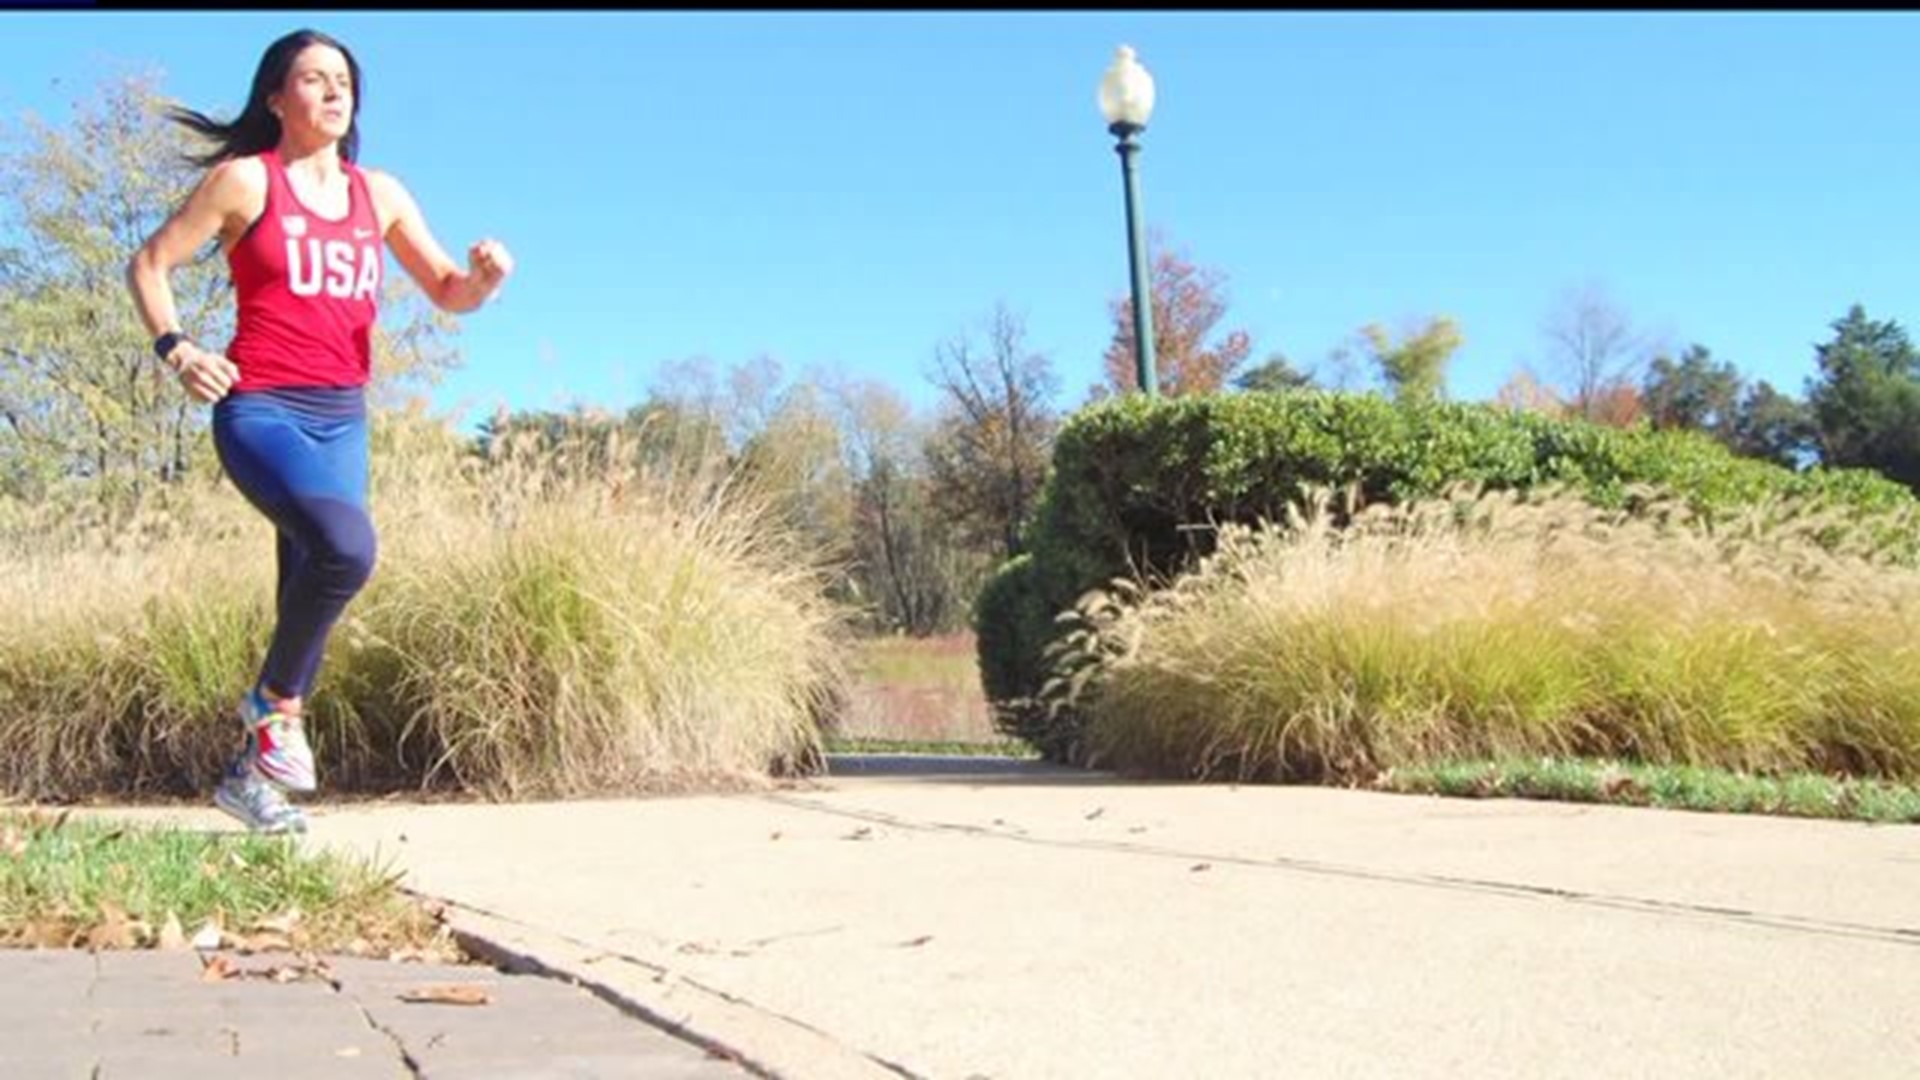 Brain cancer survivor from Camp Hill takes on marathon challenge